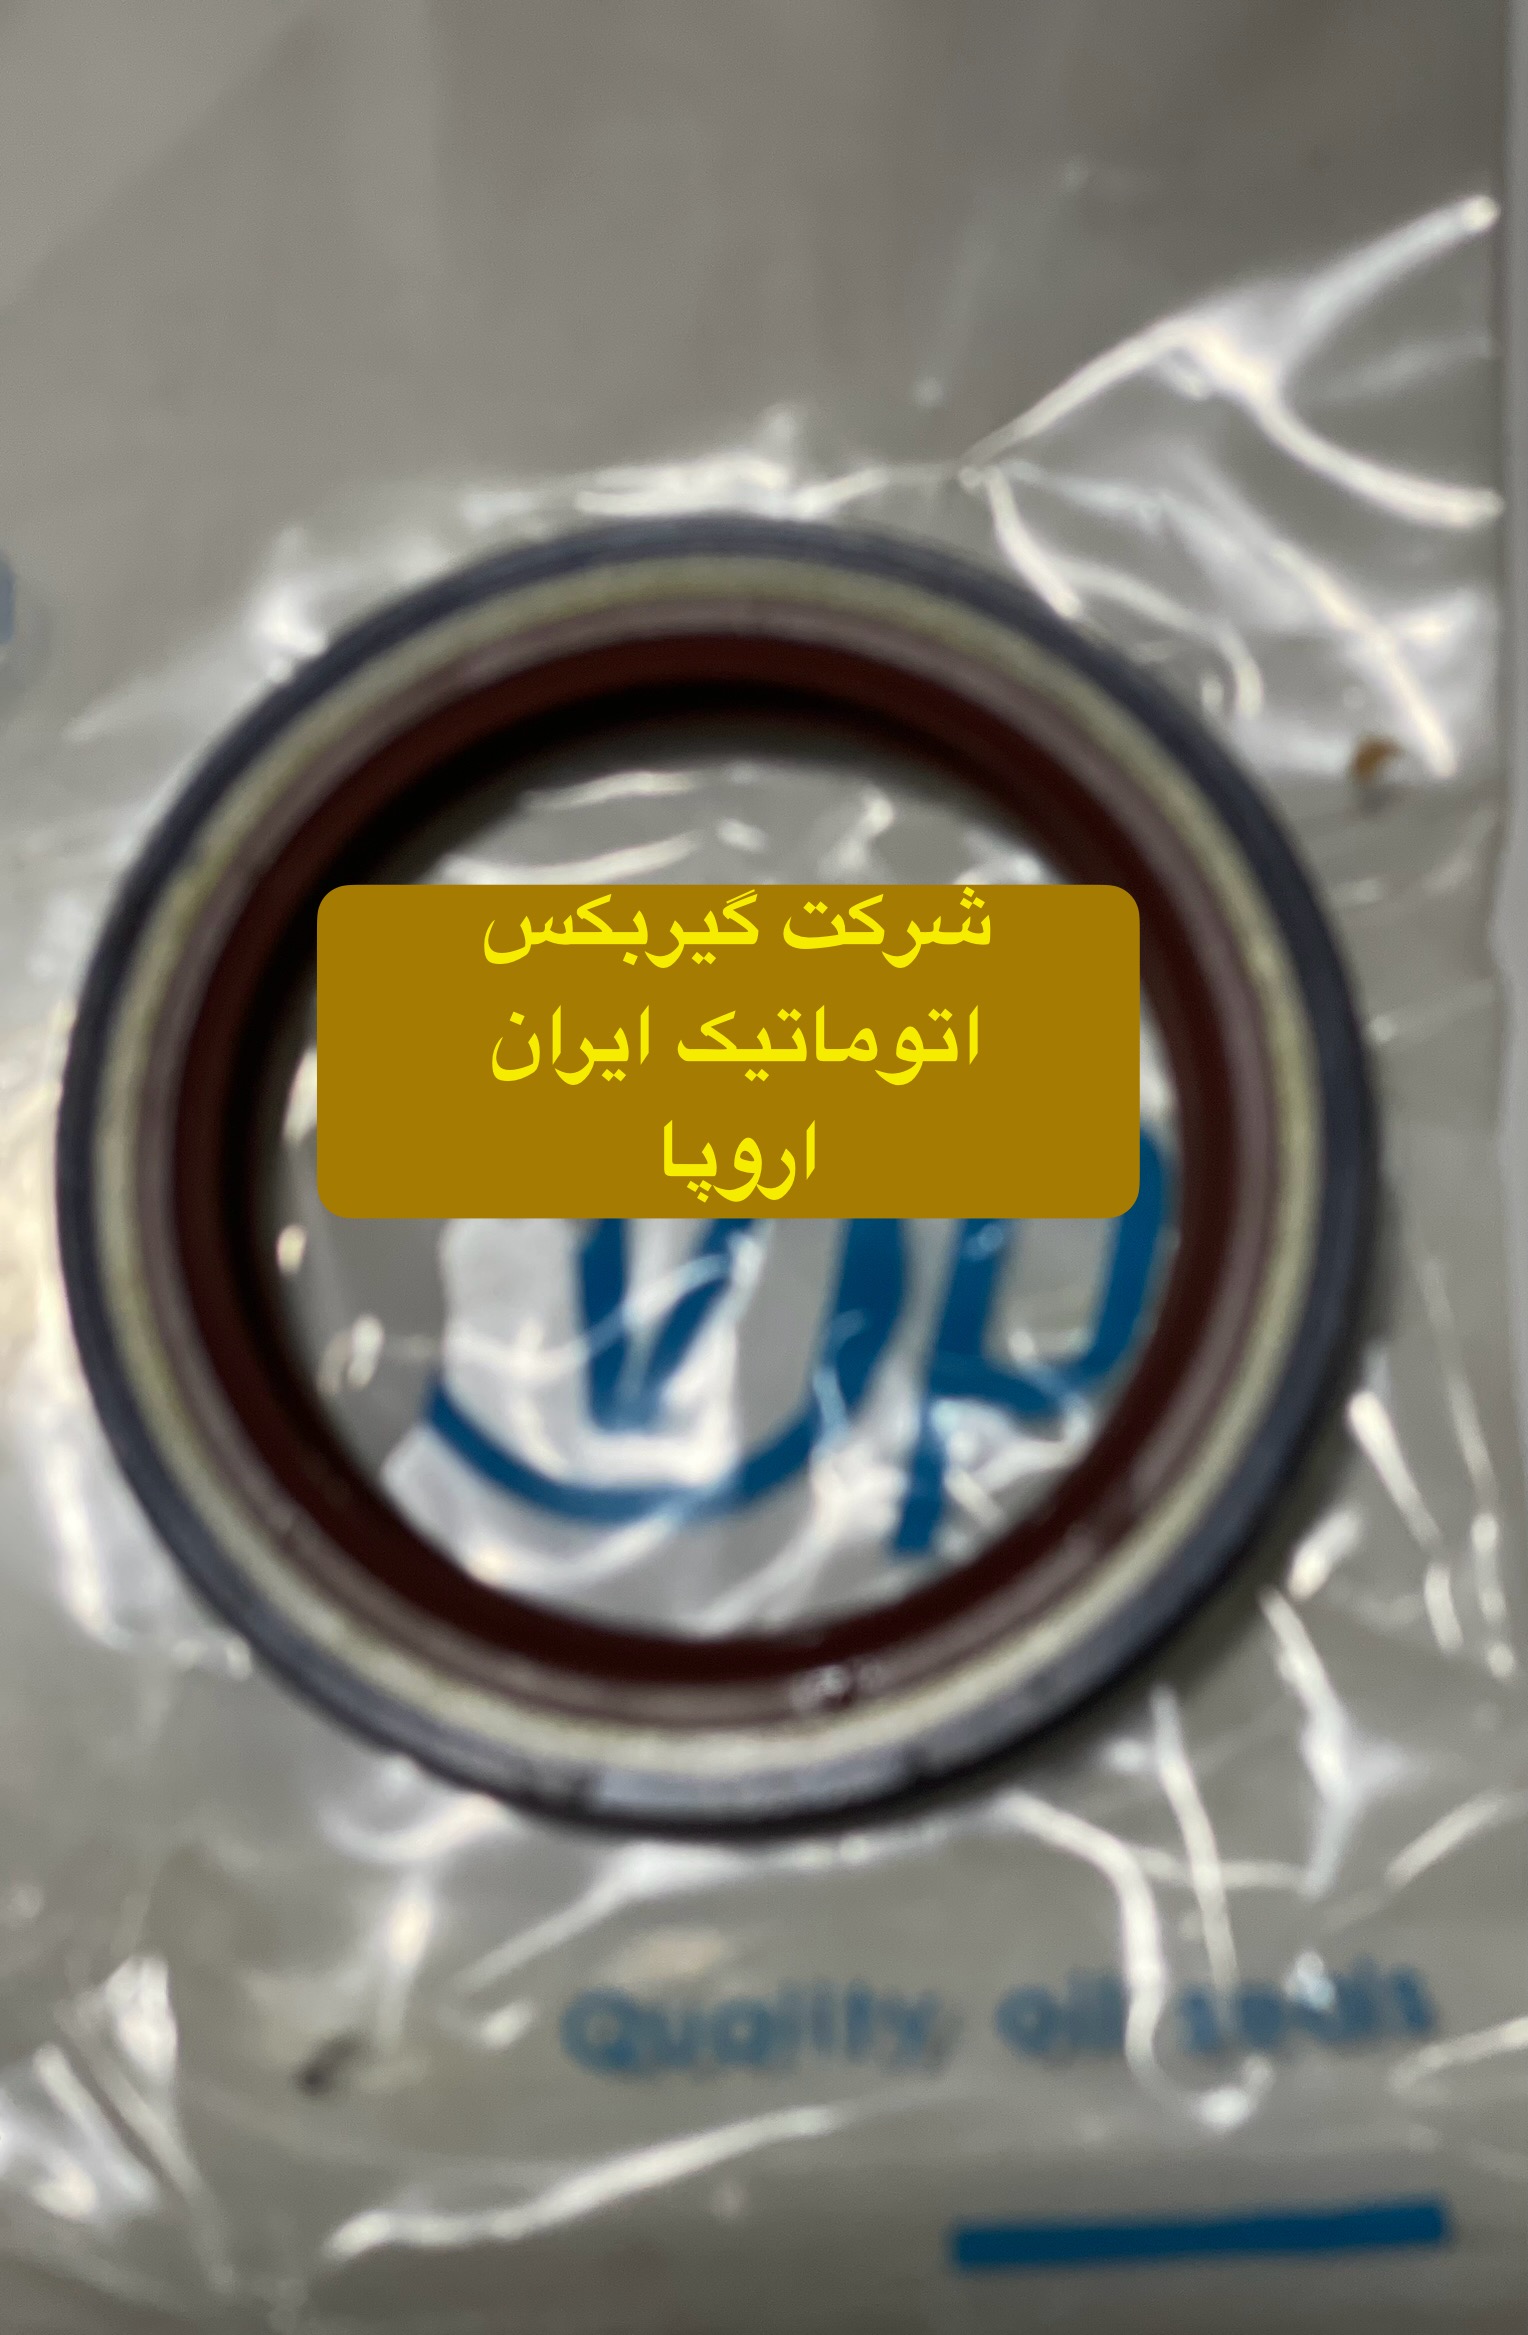 شرکت (تعمیرگاه) گیربکس اتوماتیک ایران اروپا فروش کاسه نمد اویل پمب گیربکس اتوماتیک پژو 207